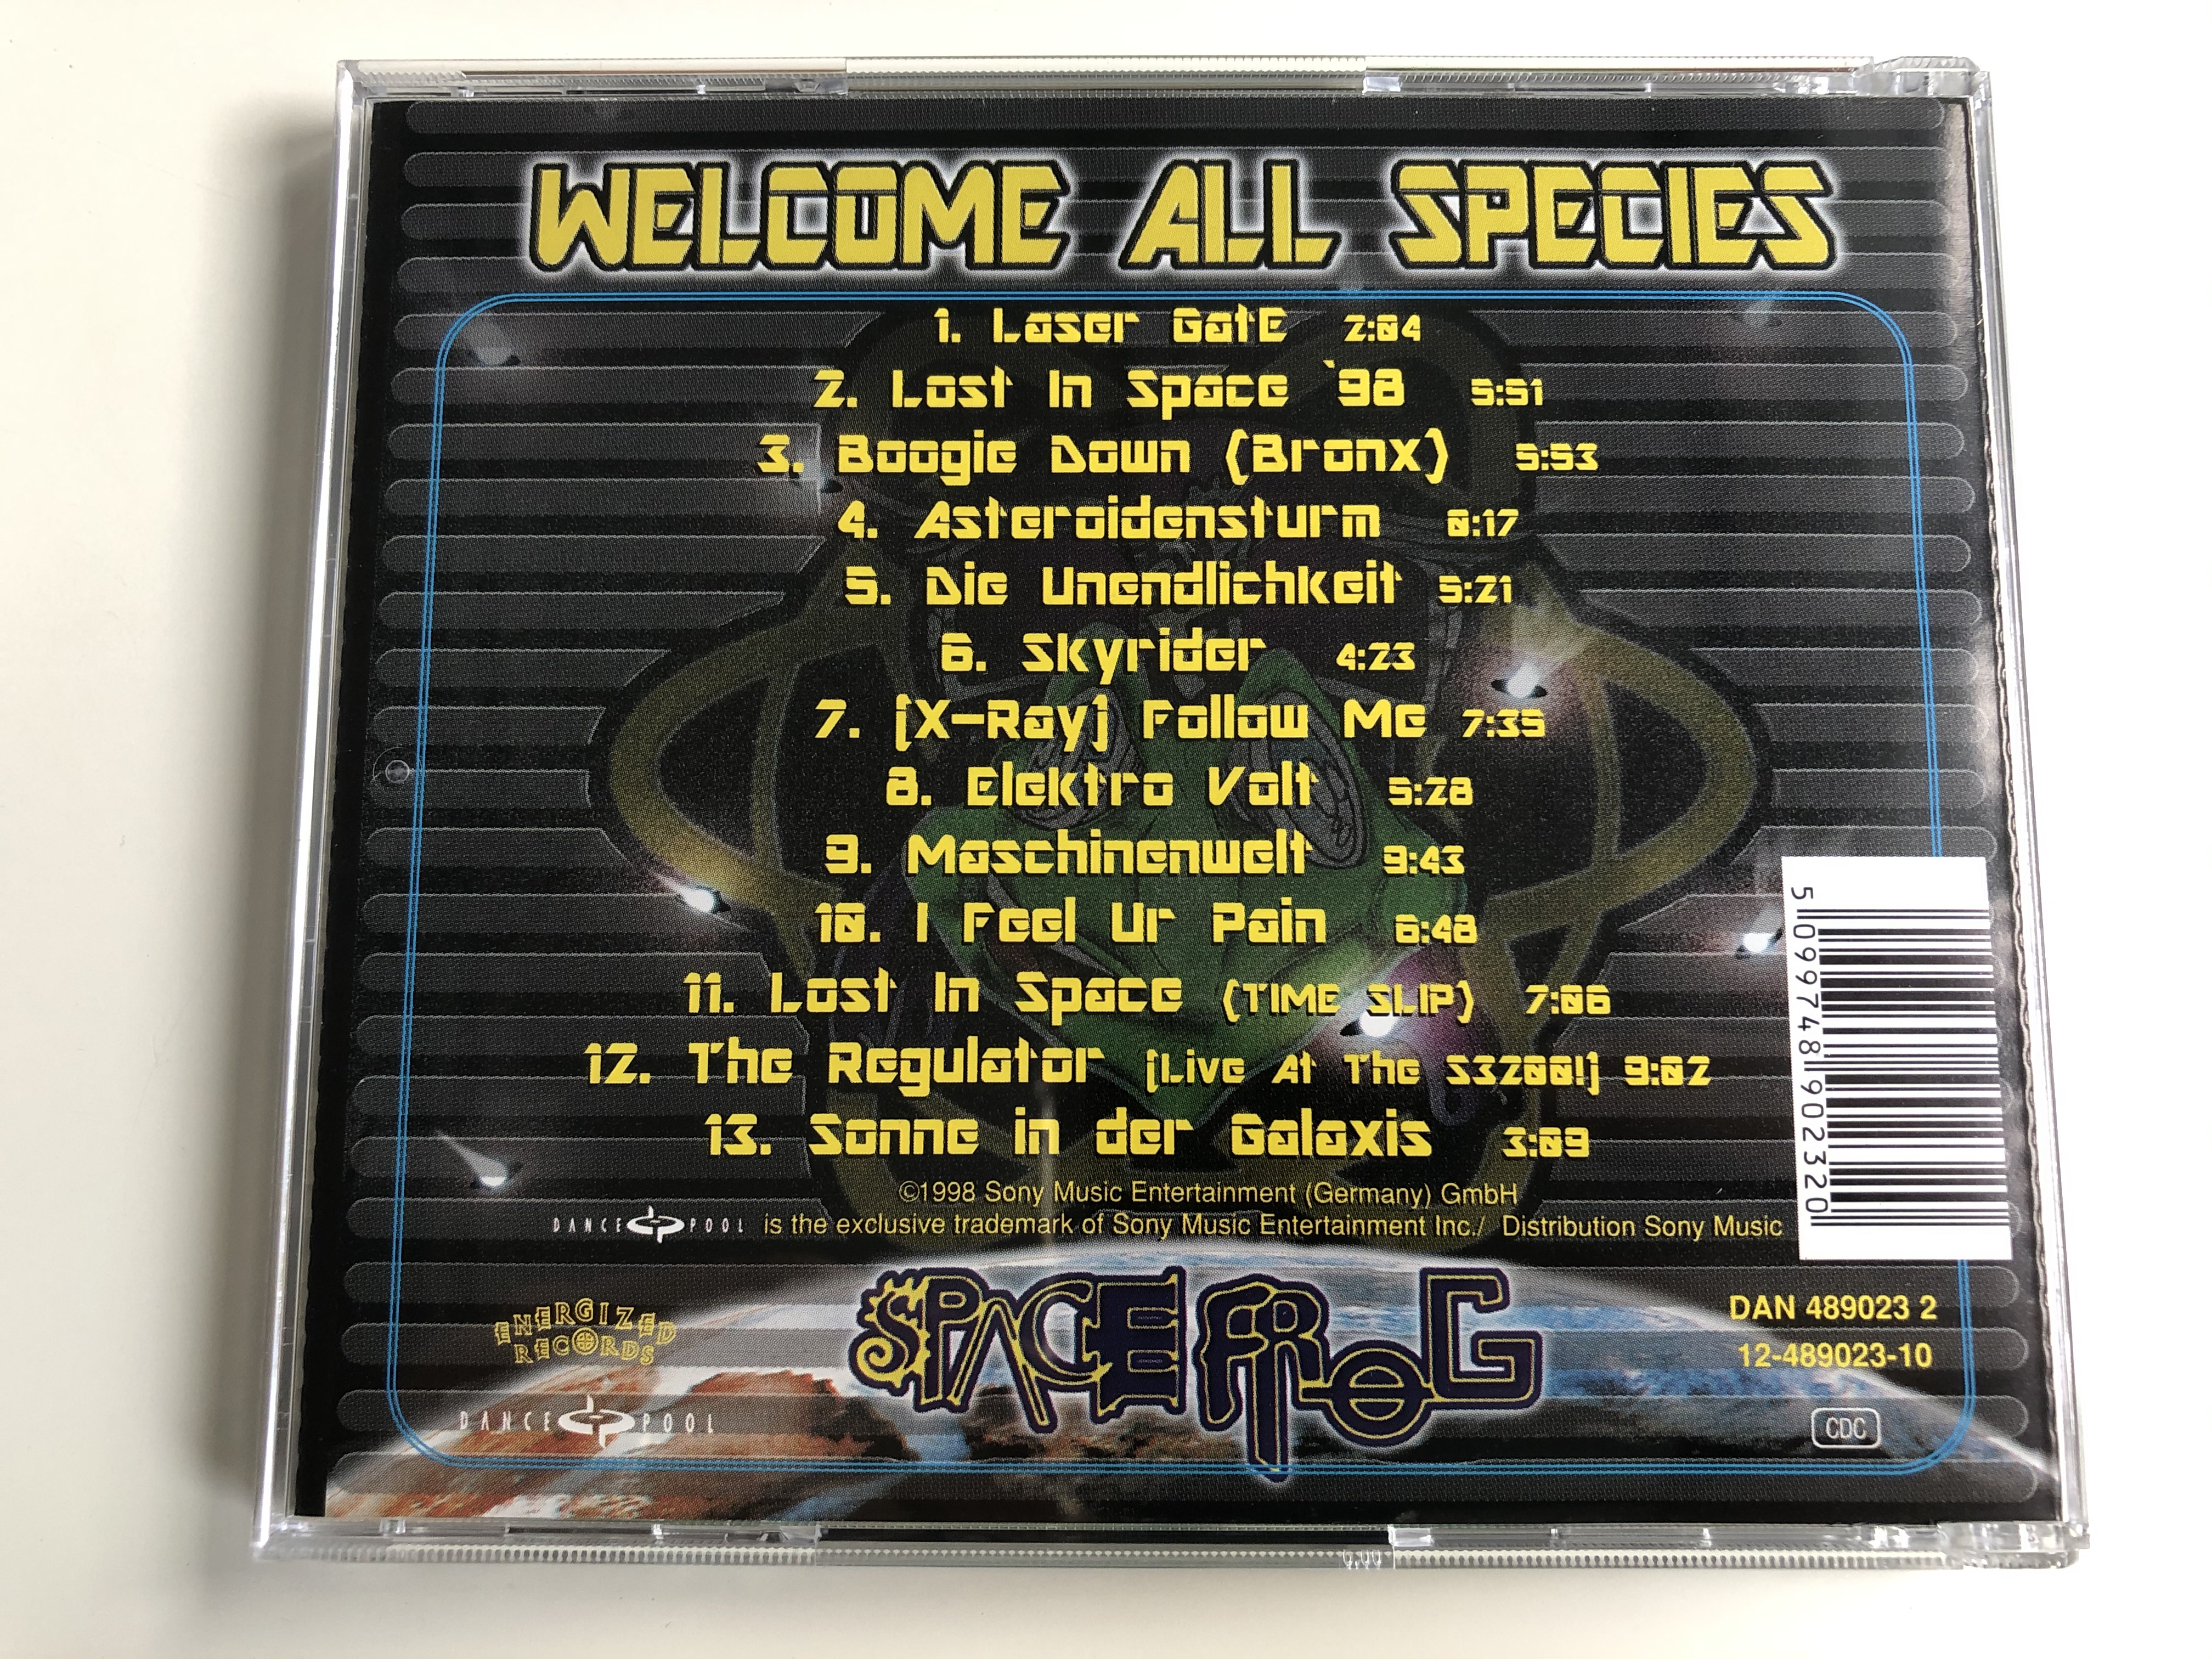 space-frog-welcome-all-species-dance-pool-audio-cd-1998-489023-2-10-.jpg